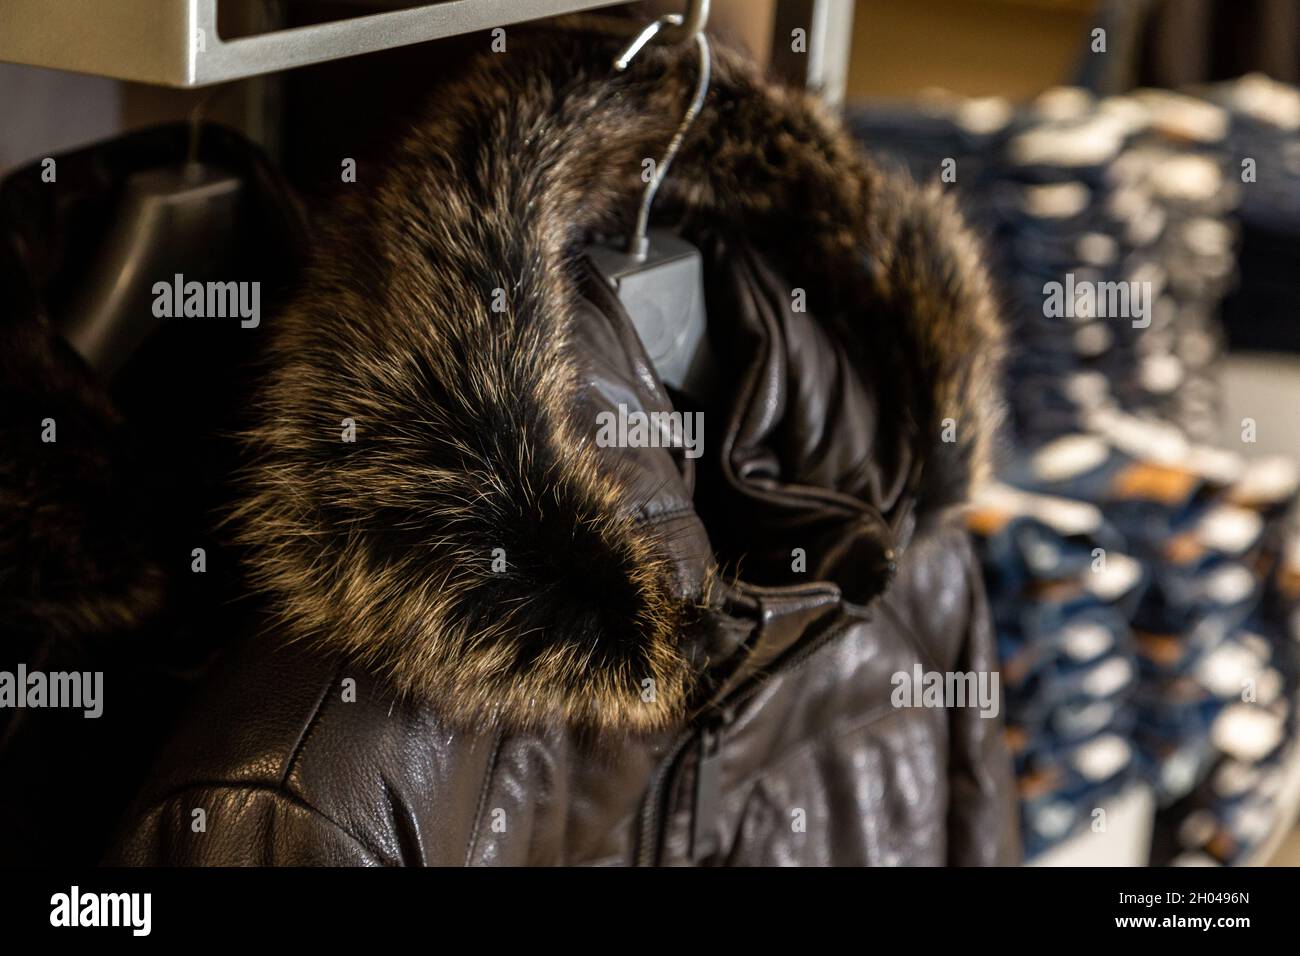 luvrumcaketoo  Fur clothing, Fur fashion, Fashion